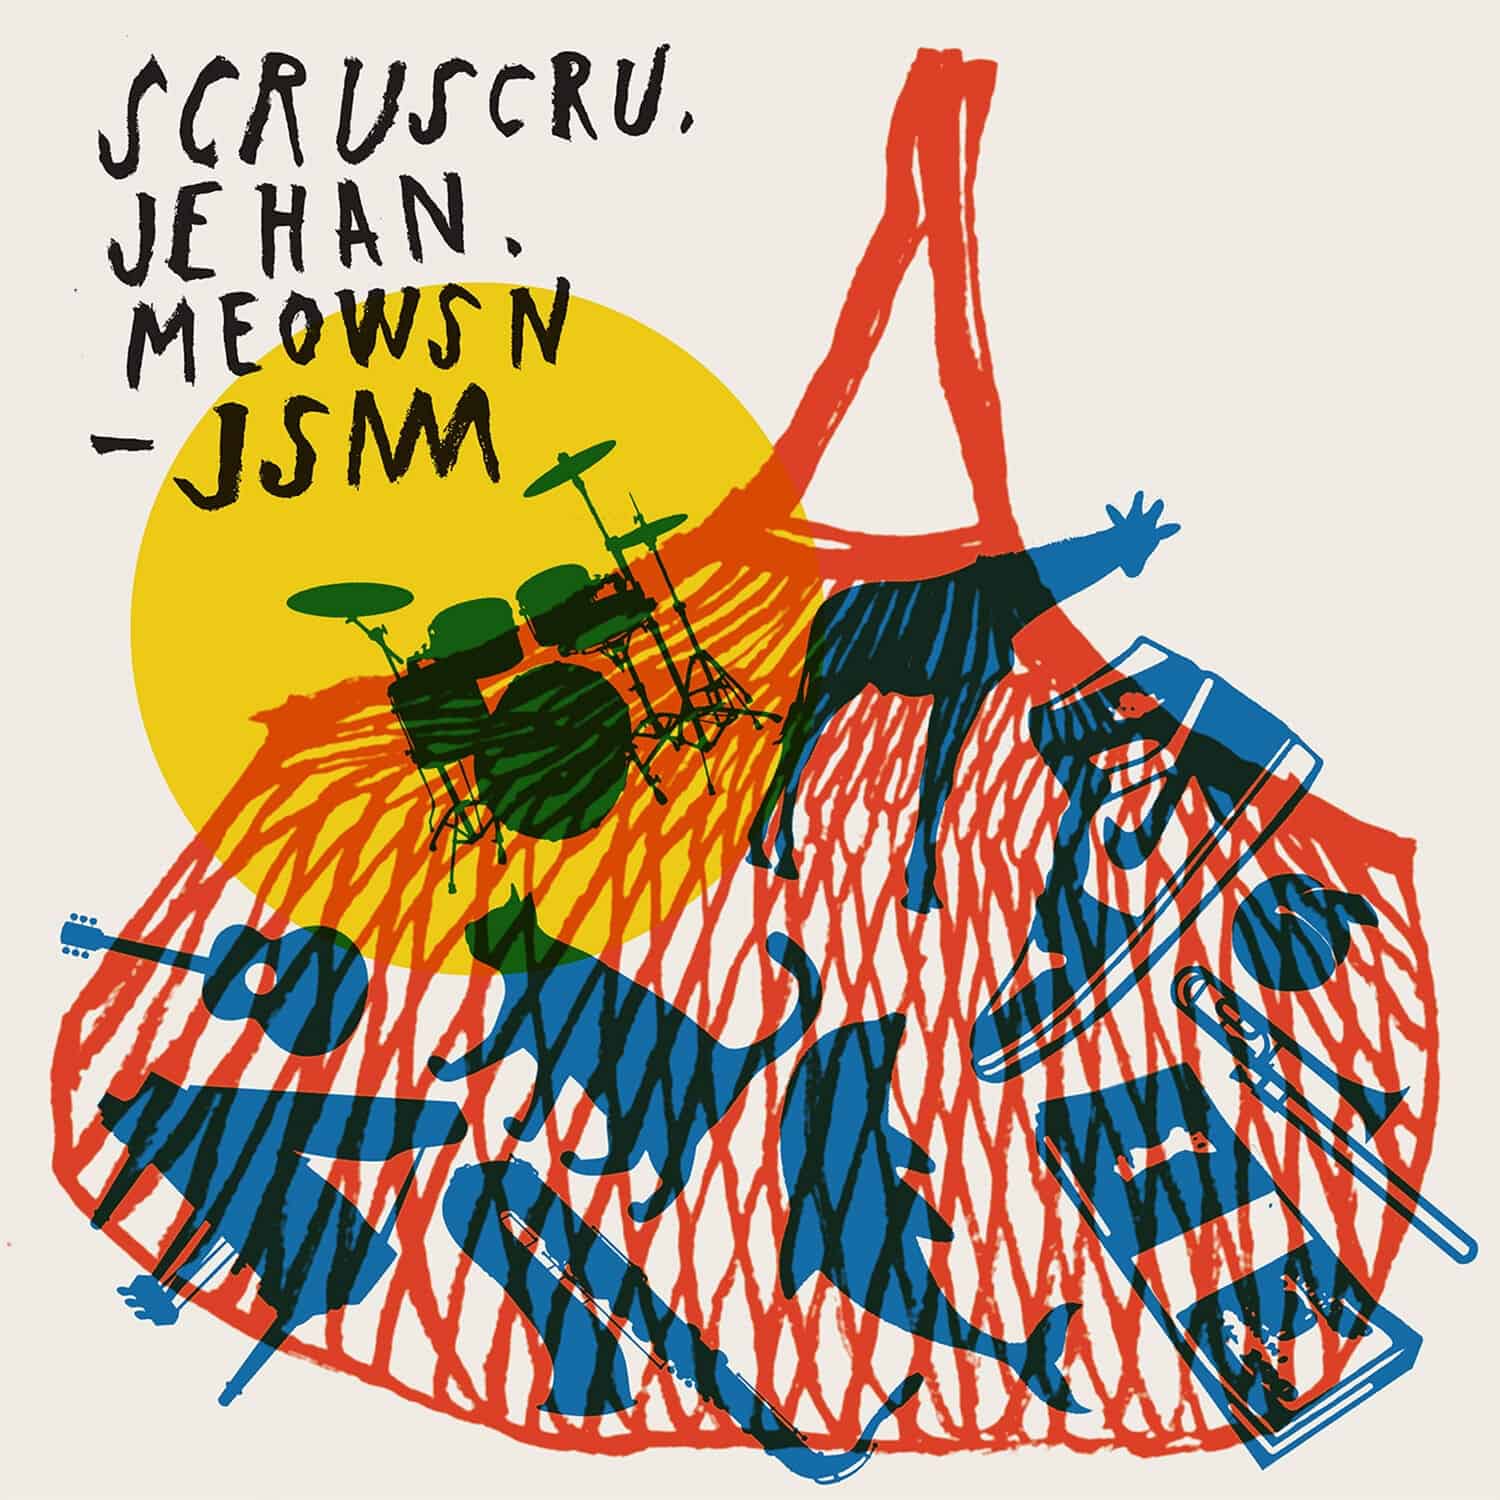 image cover: Scruscru - JSM